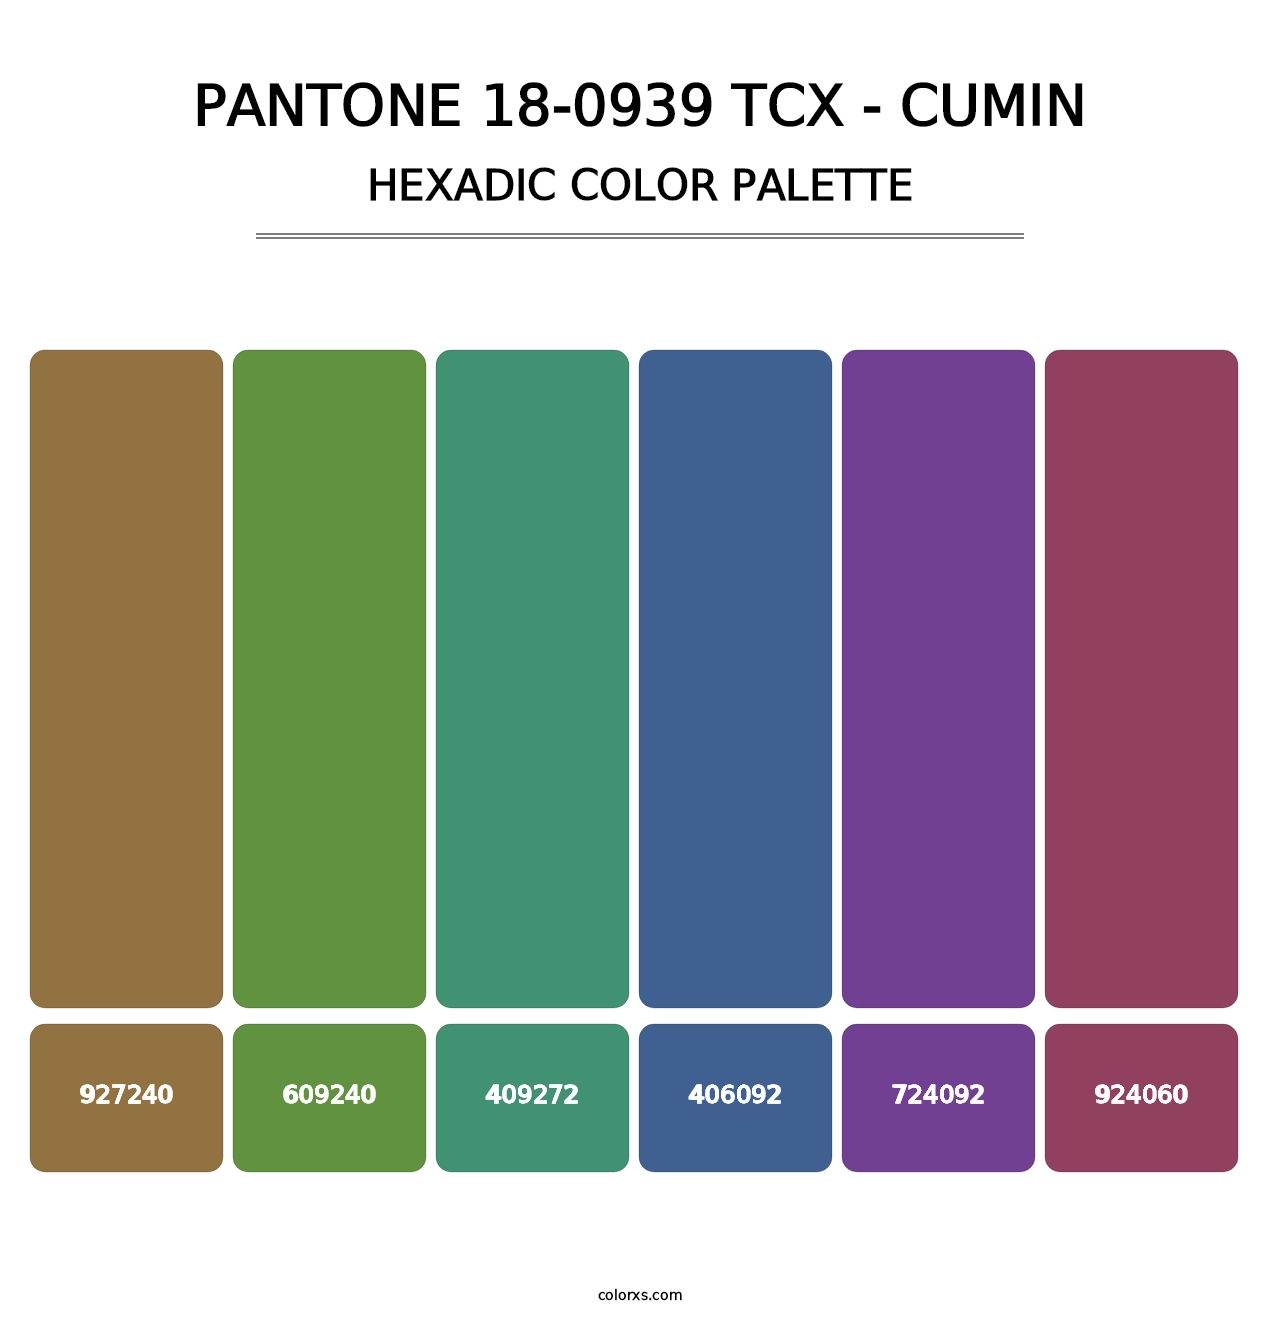 PANTONE 18-0939 TCX - Cumin - Hexadic Color Palette